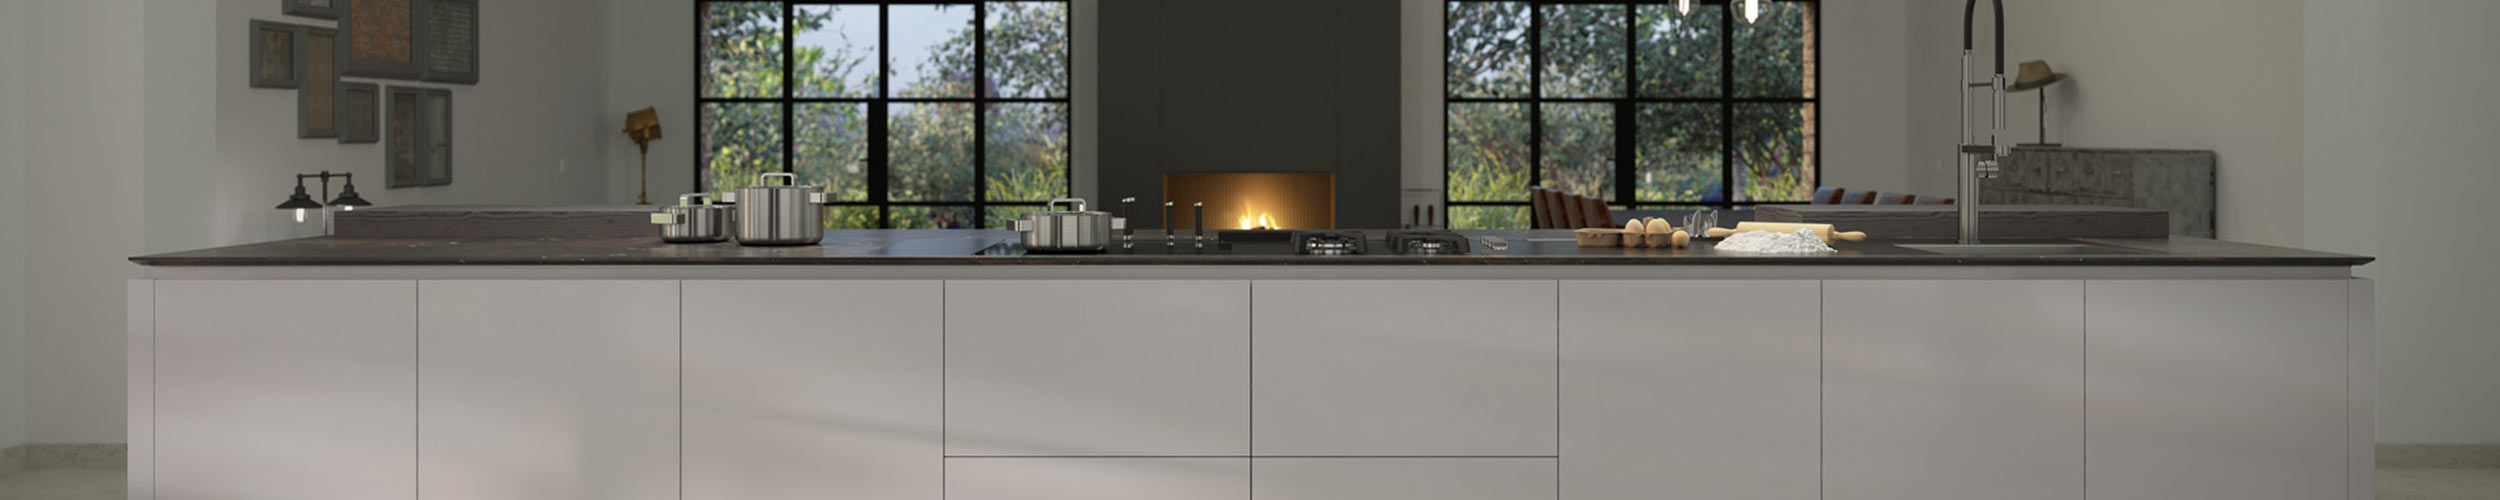 Vista frontal de isla de cocina con encimera de color negro y muebles de color gris claro con sistema LÓGICA de Senssia con fregadero y hornillos de cocinado